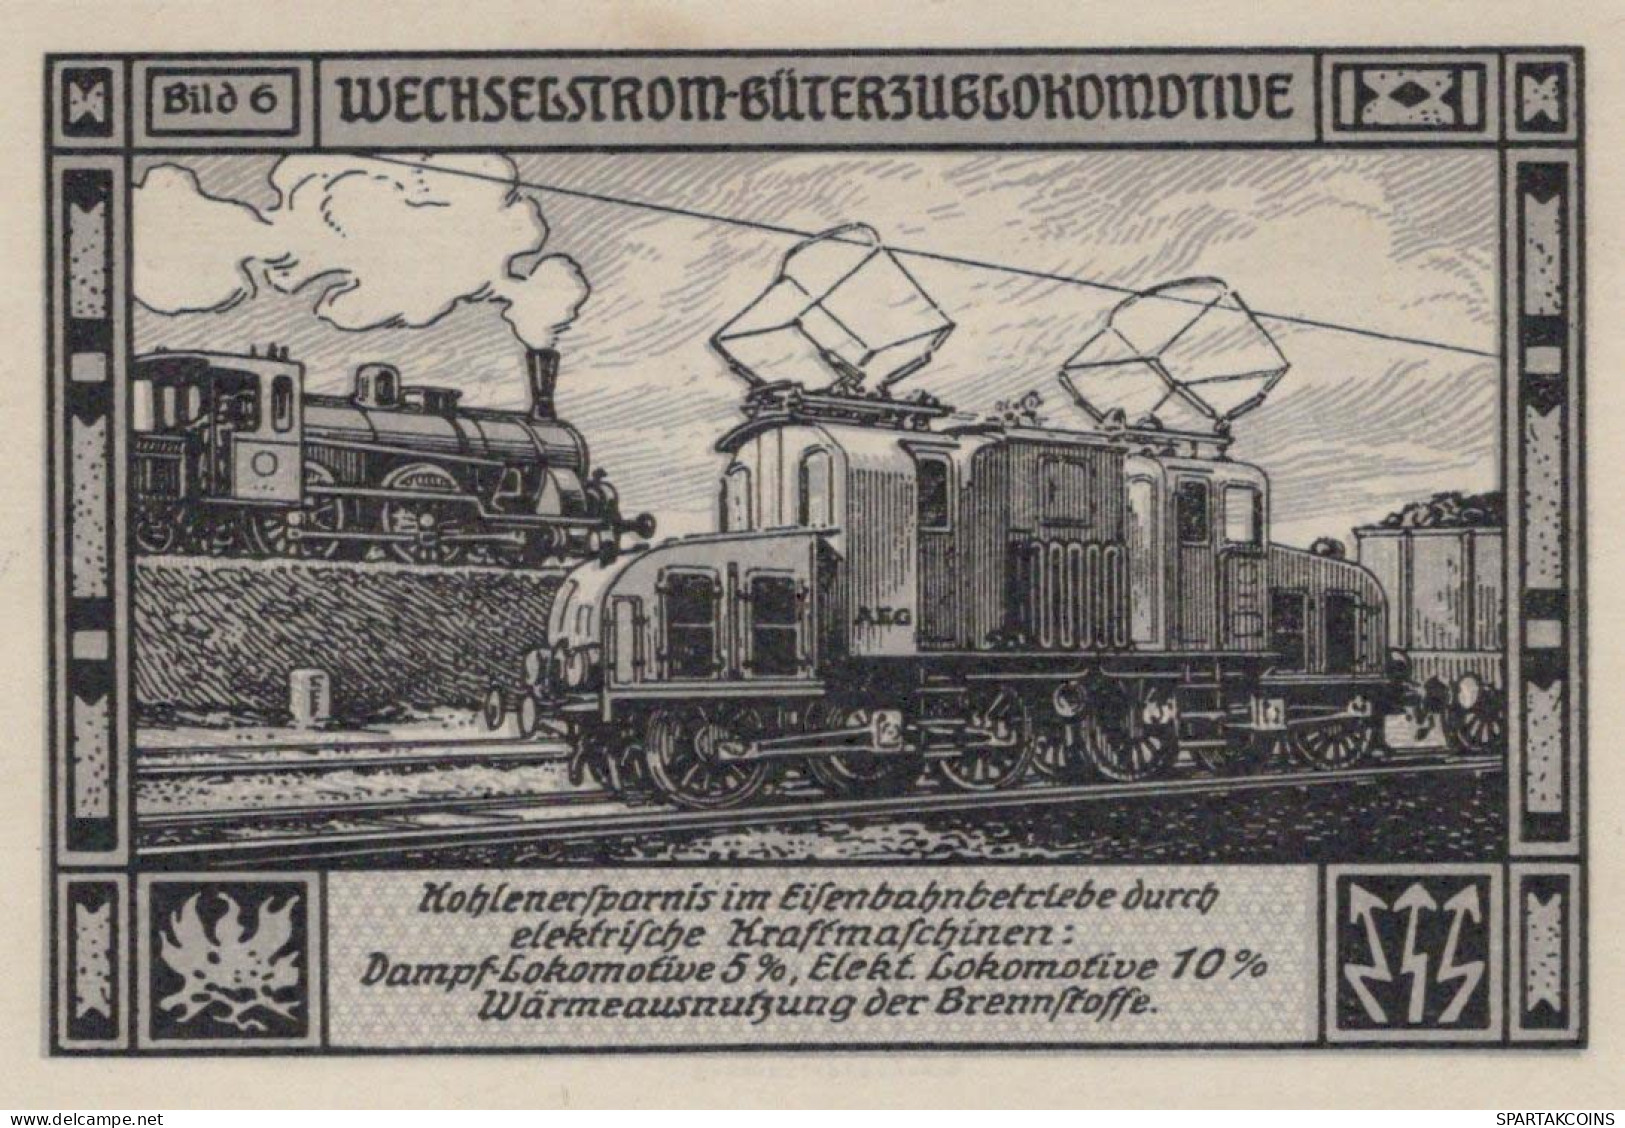 75 PFENNIG 1921 Stadt BITTERFIELD Westphalia UNC DEUTSCHLAND Notgeld #PA233 - Lokale Ausgaben